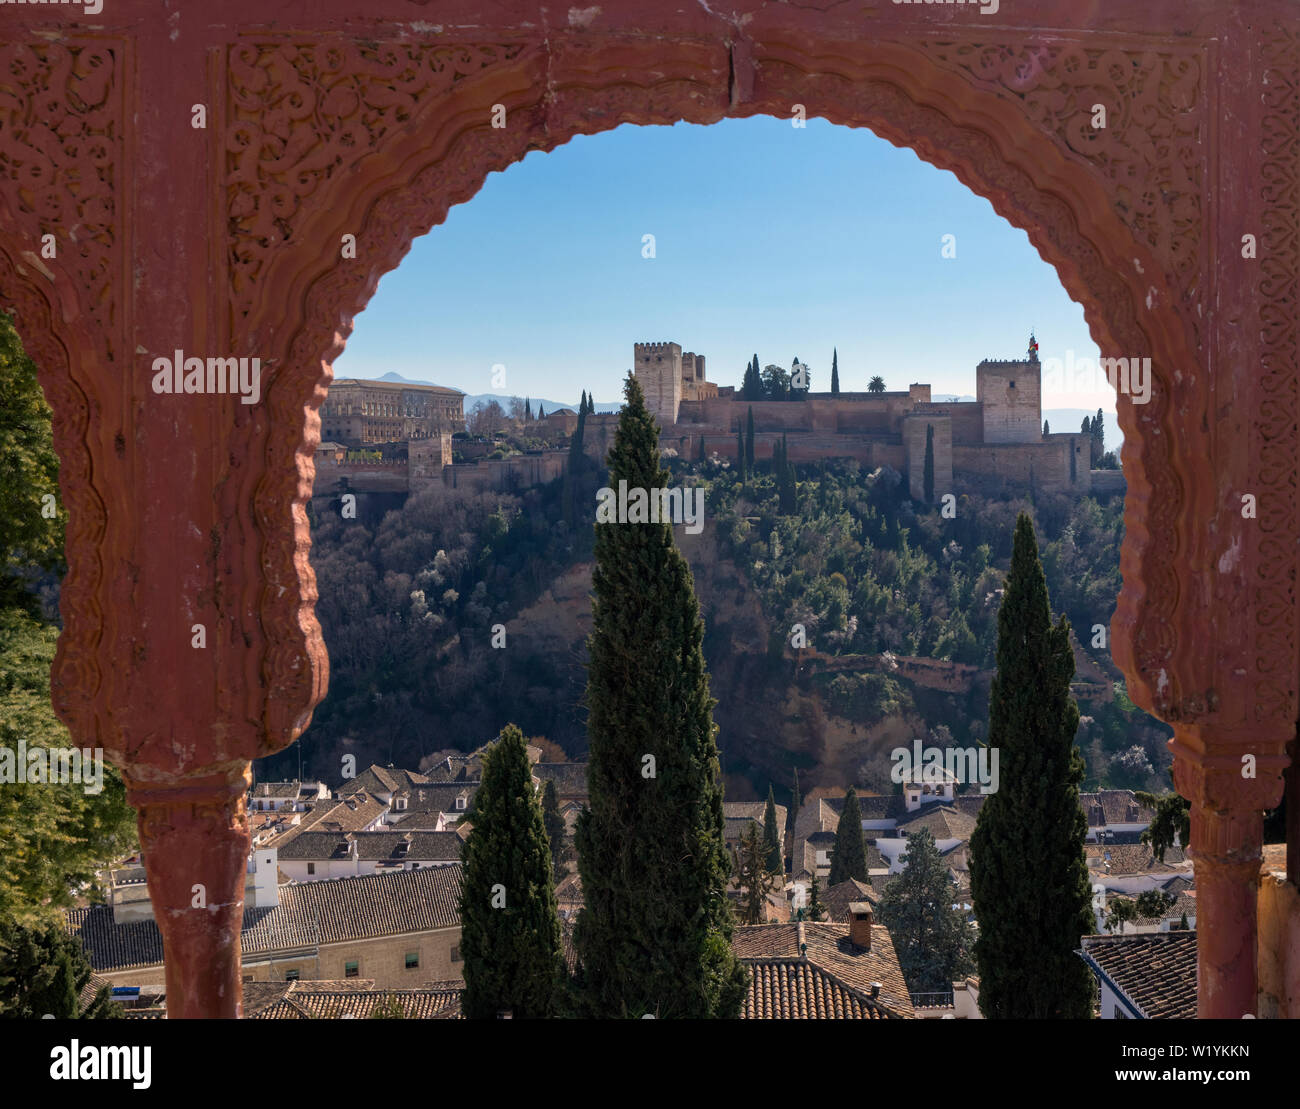 Blick durch ein maurischer Bogen über dem Albayzin zur Alhambra. Granada, Granada Provinz, Andalusien, Südspanien. Die Alhambra, Generalife und Stockfoto